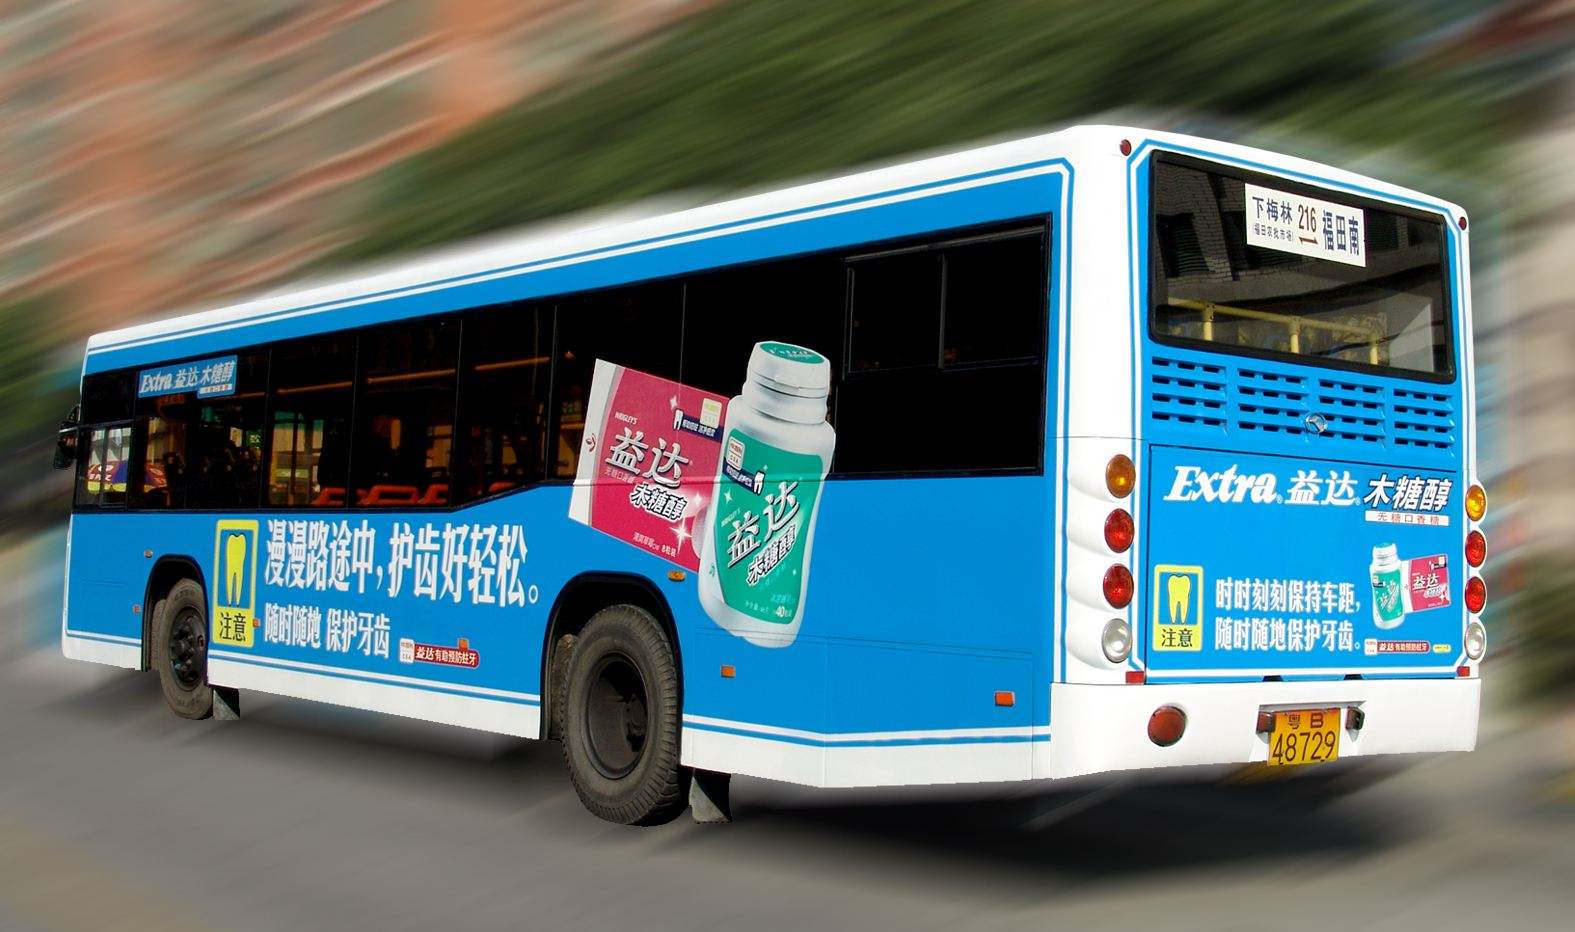 公交车身广告的色彩元素运用